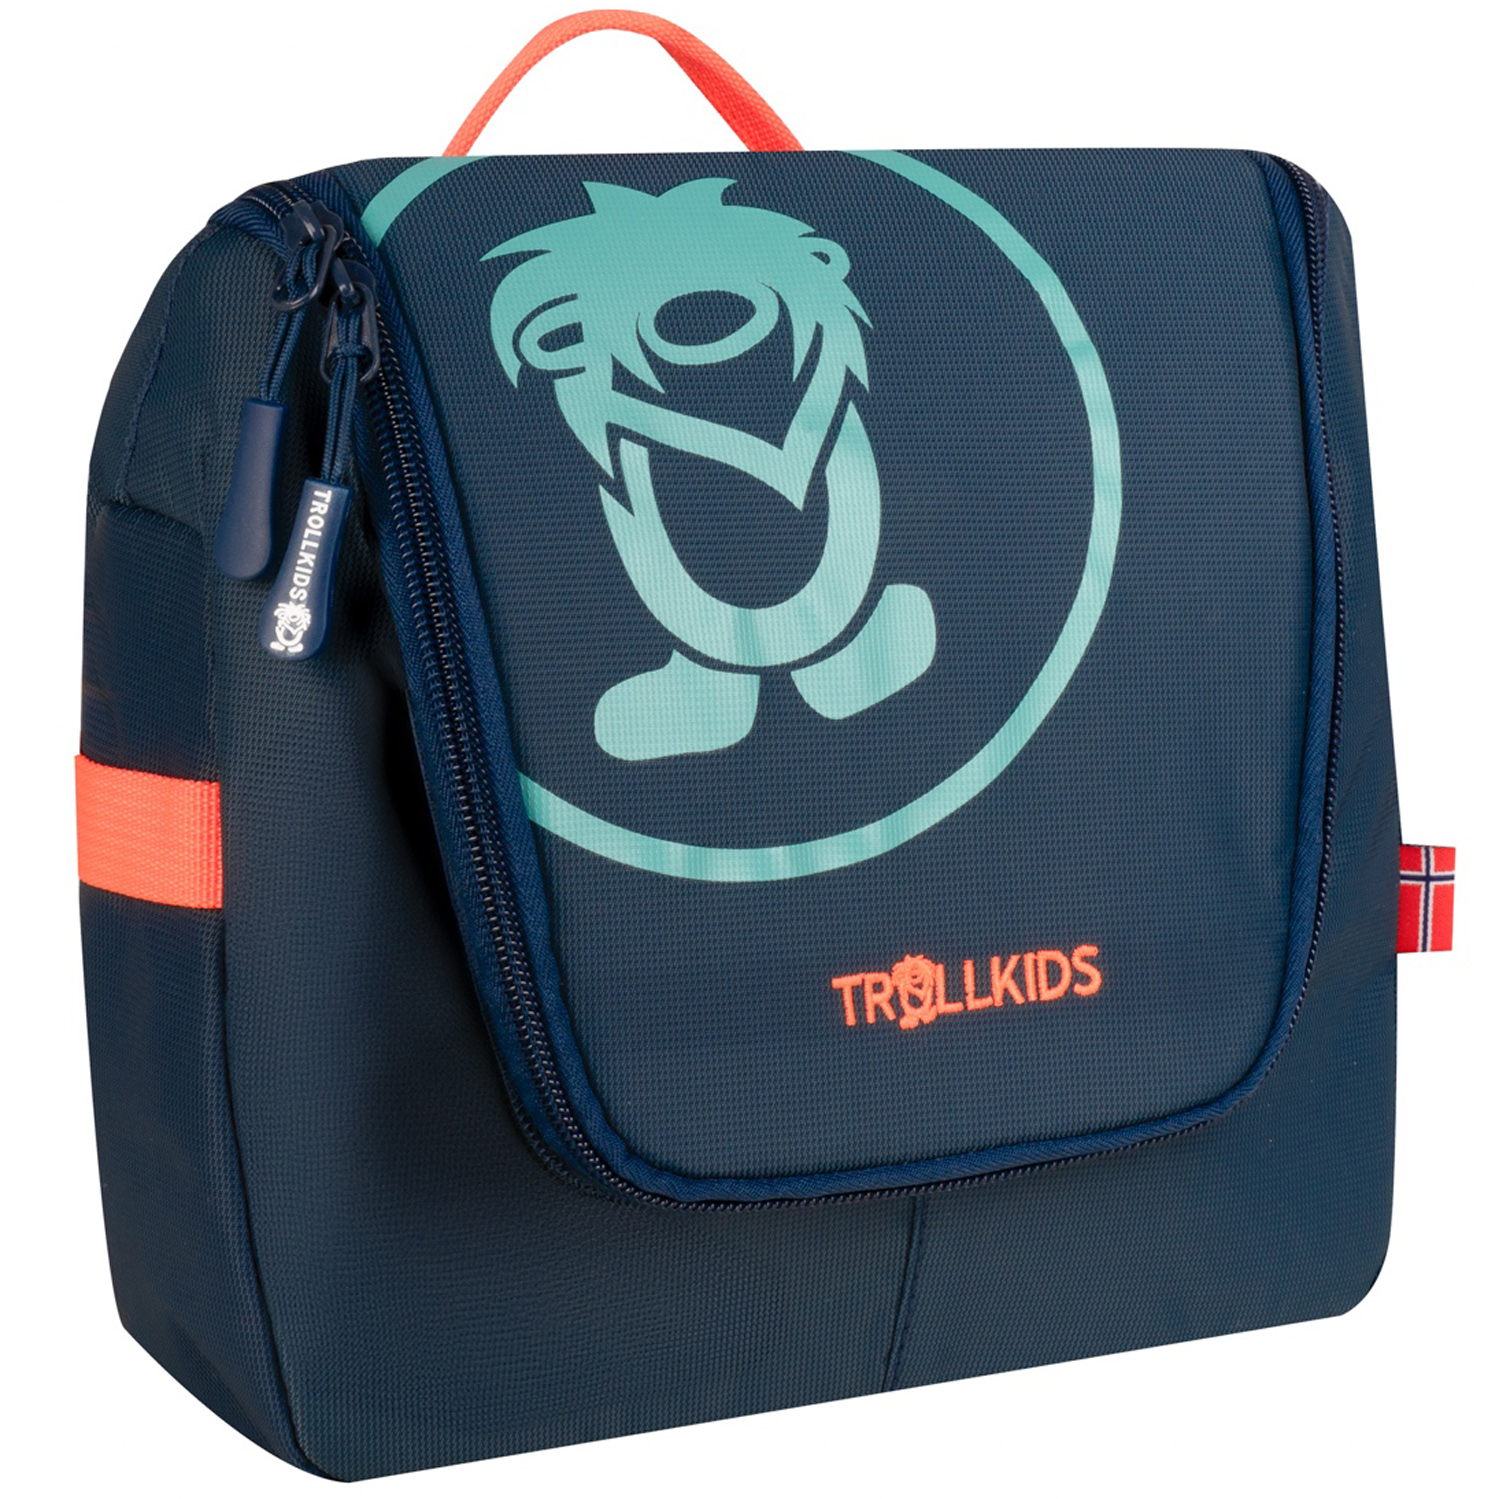 Productfoto van Trollkids Toilettas 5L Kinderen - navy/glow orange/dusky turquoise